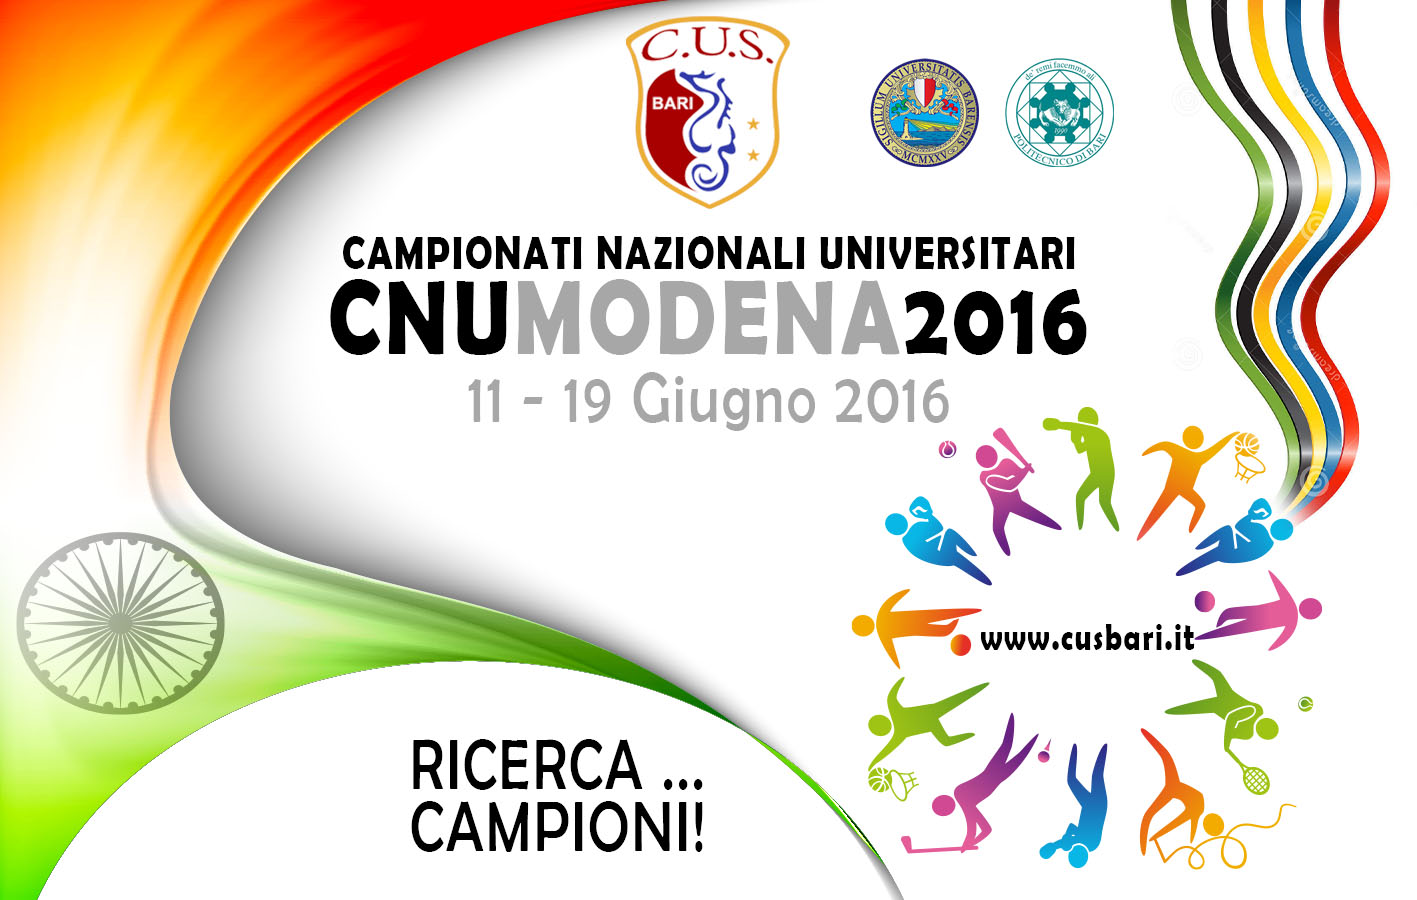 81 i Boxer partecipanti agli Universitari 2016 in Programma a Reggio Emilia dall'11 al 13 Giugno #CNU2016